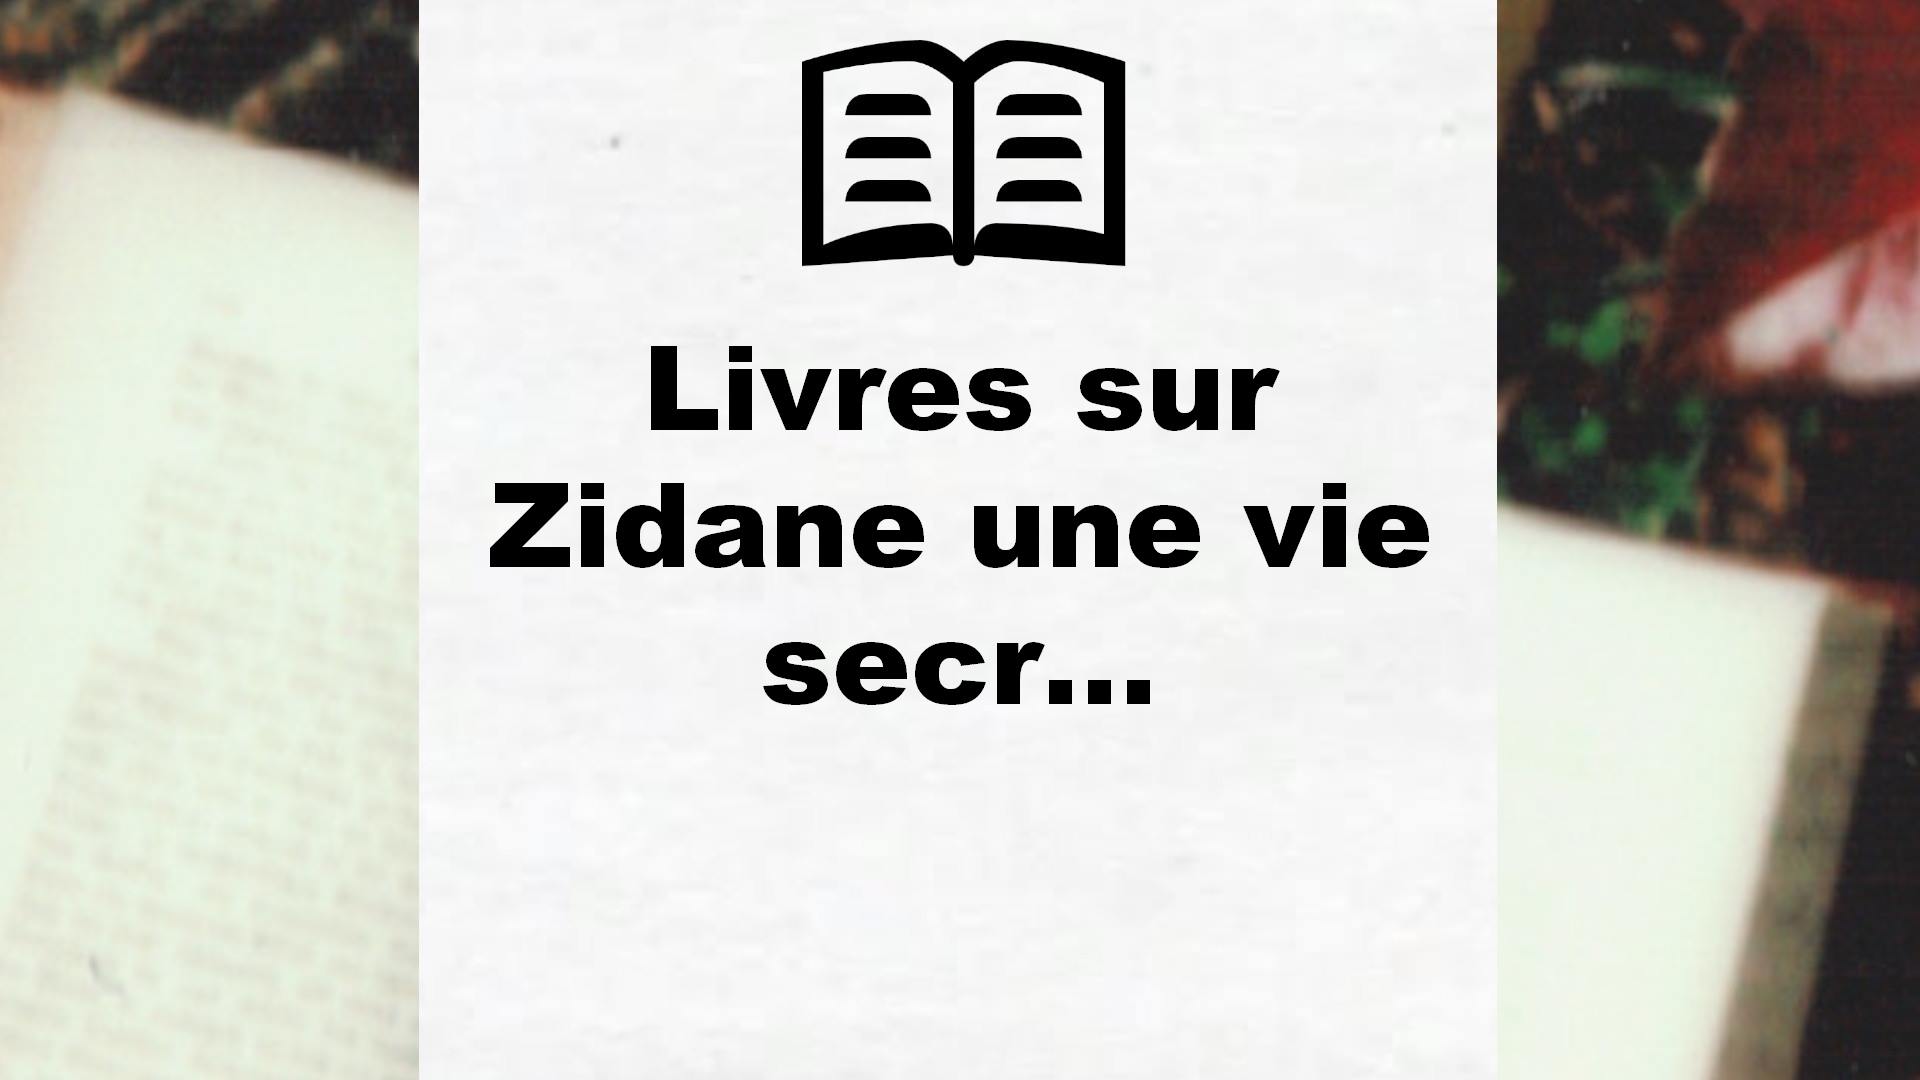 Livres sur Zidane une vie secrète